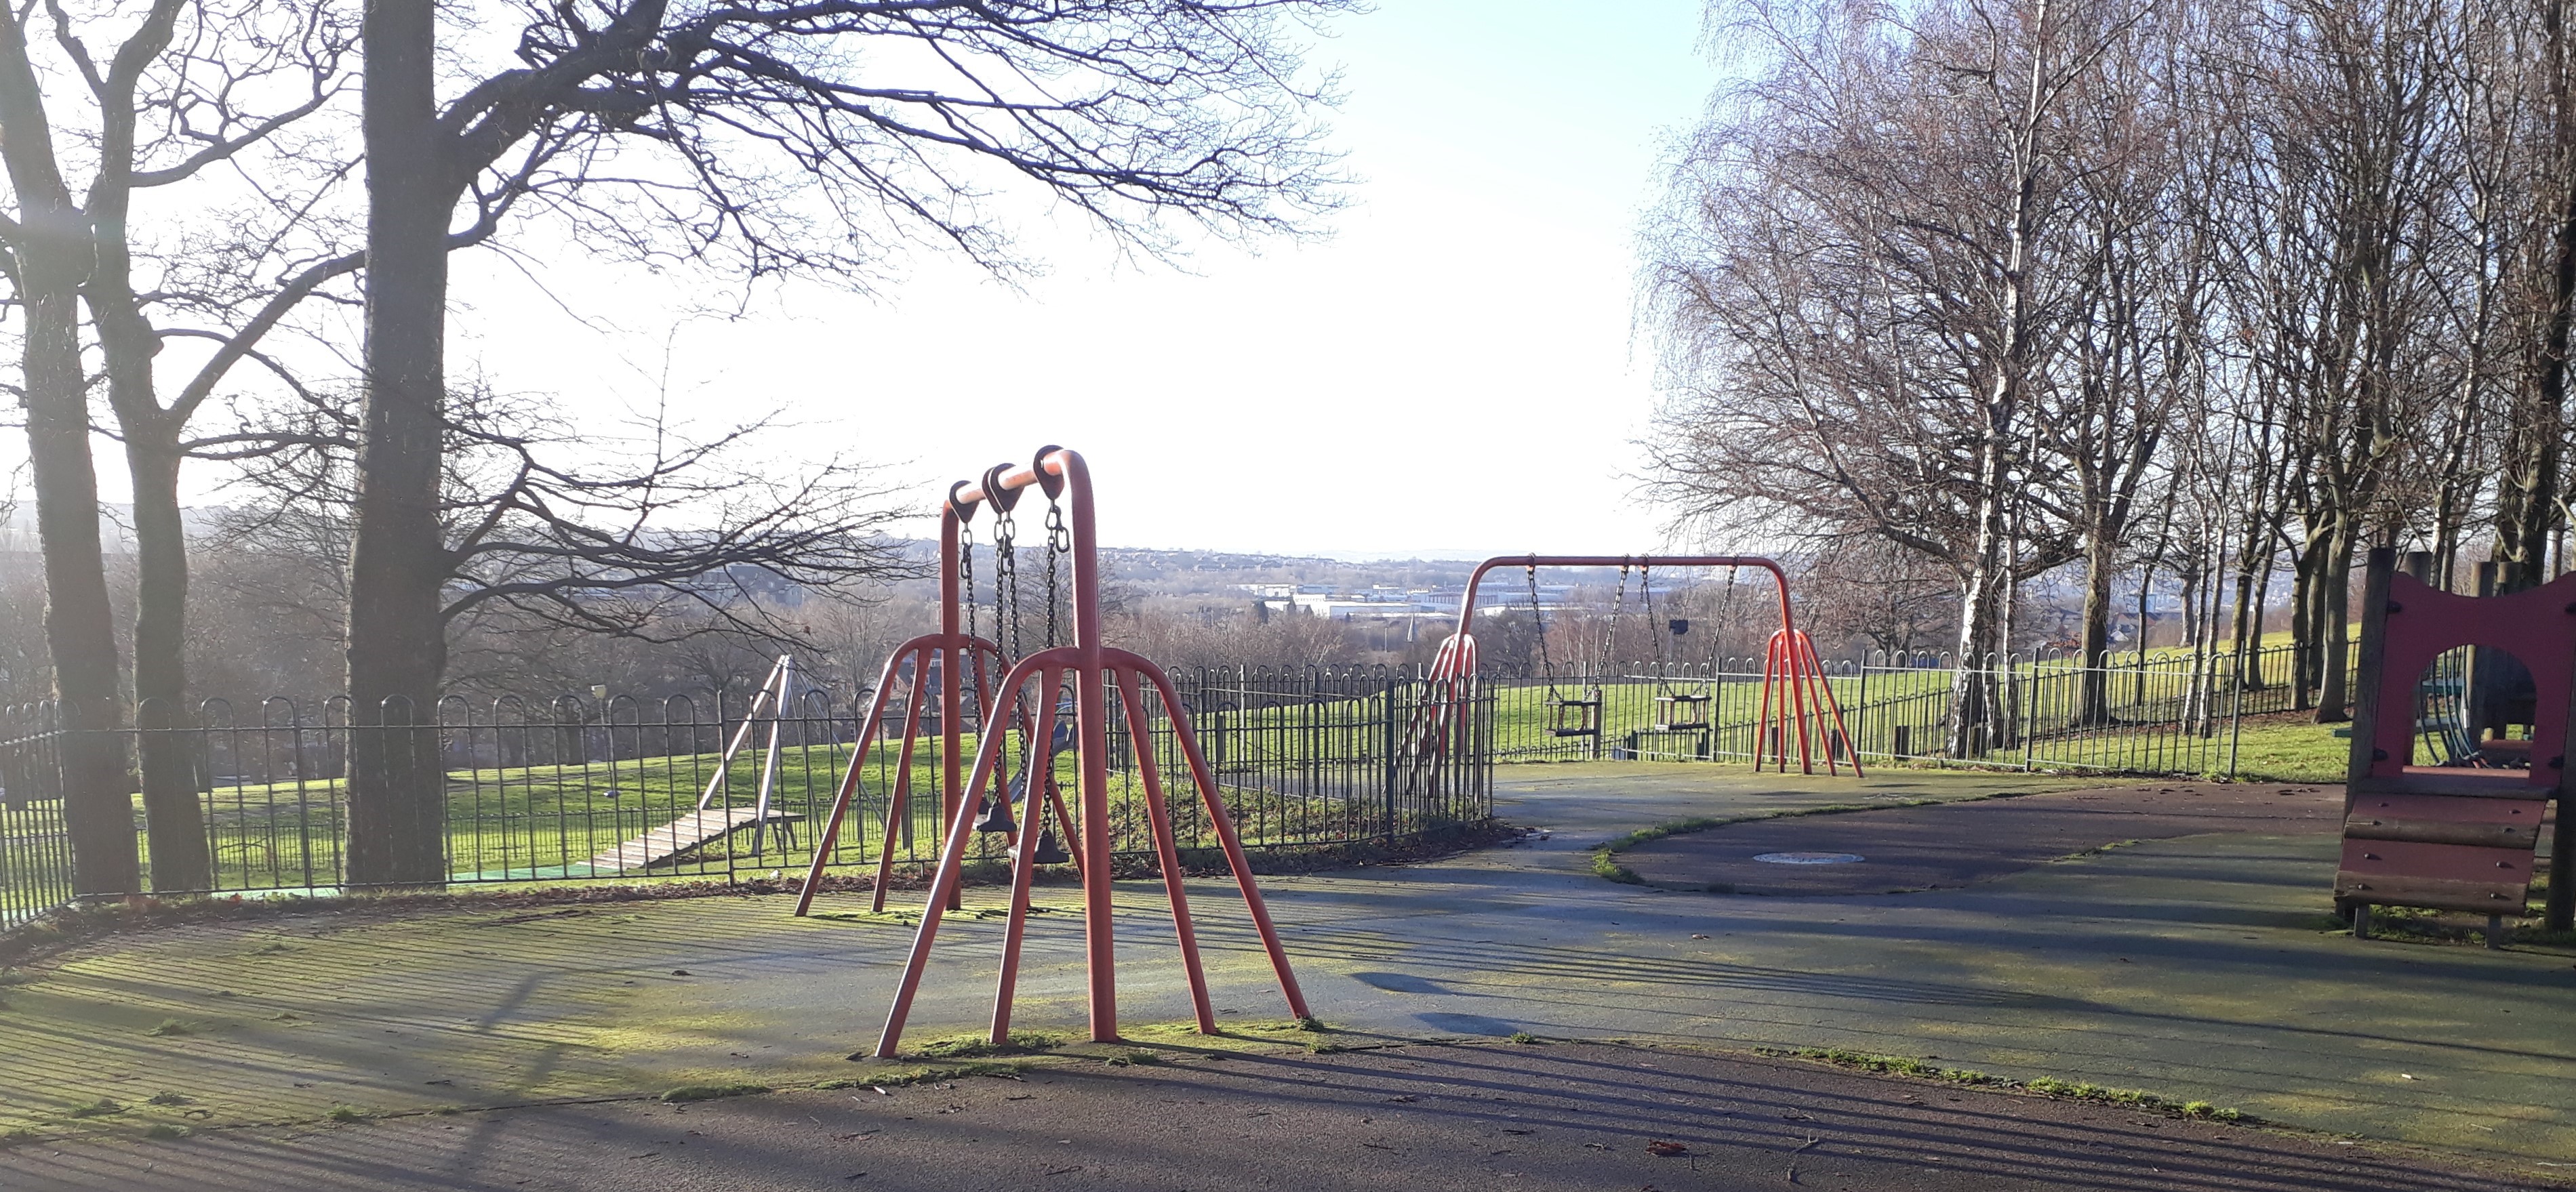 High Hazels Park in Sheffield